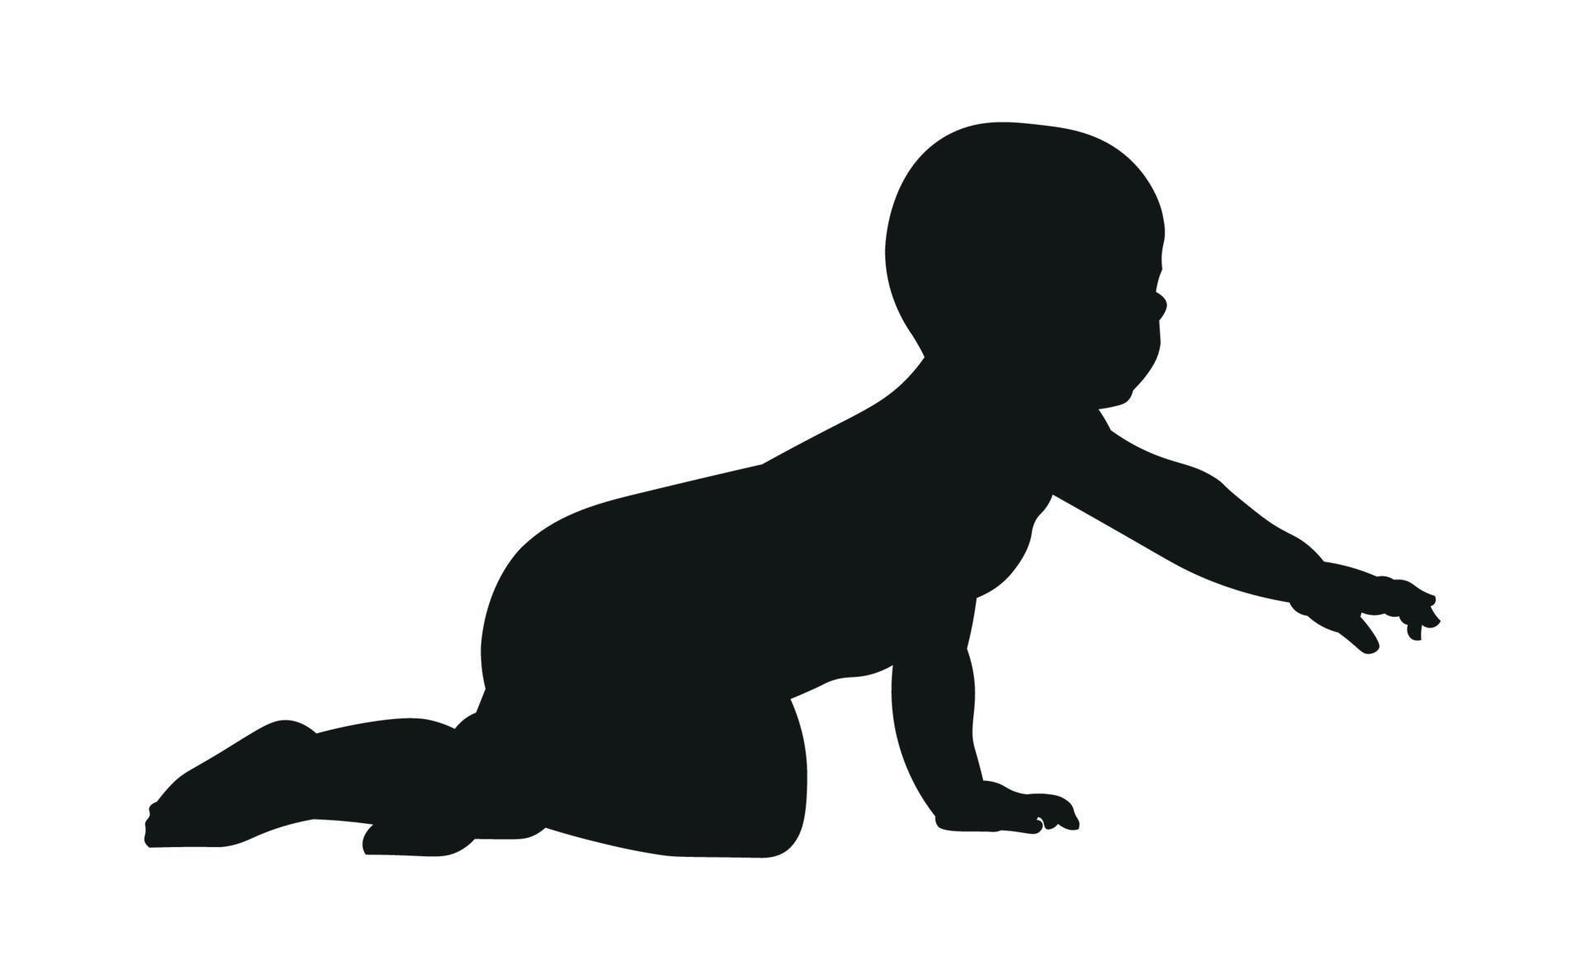 silueta de un bebé en una pose que gatea, fondo blanco. bebe negro vector